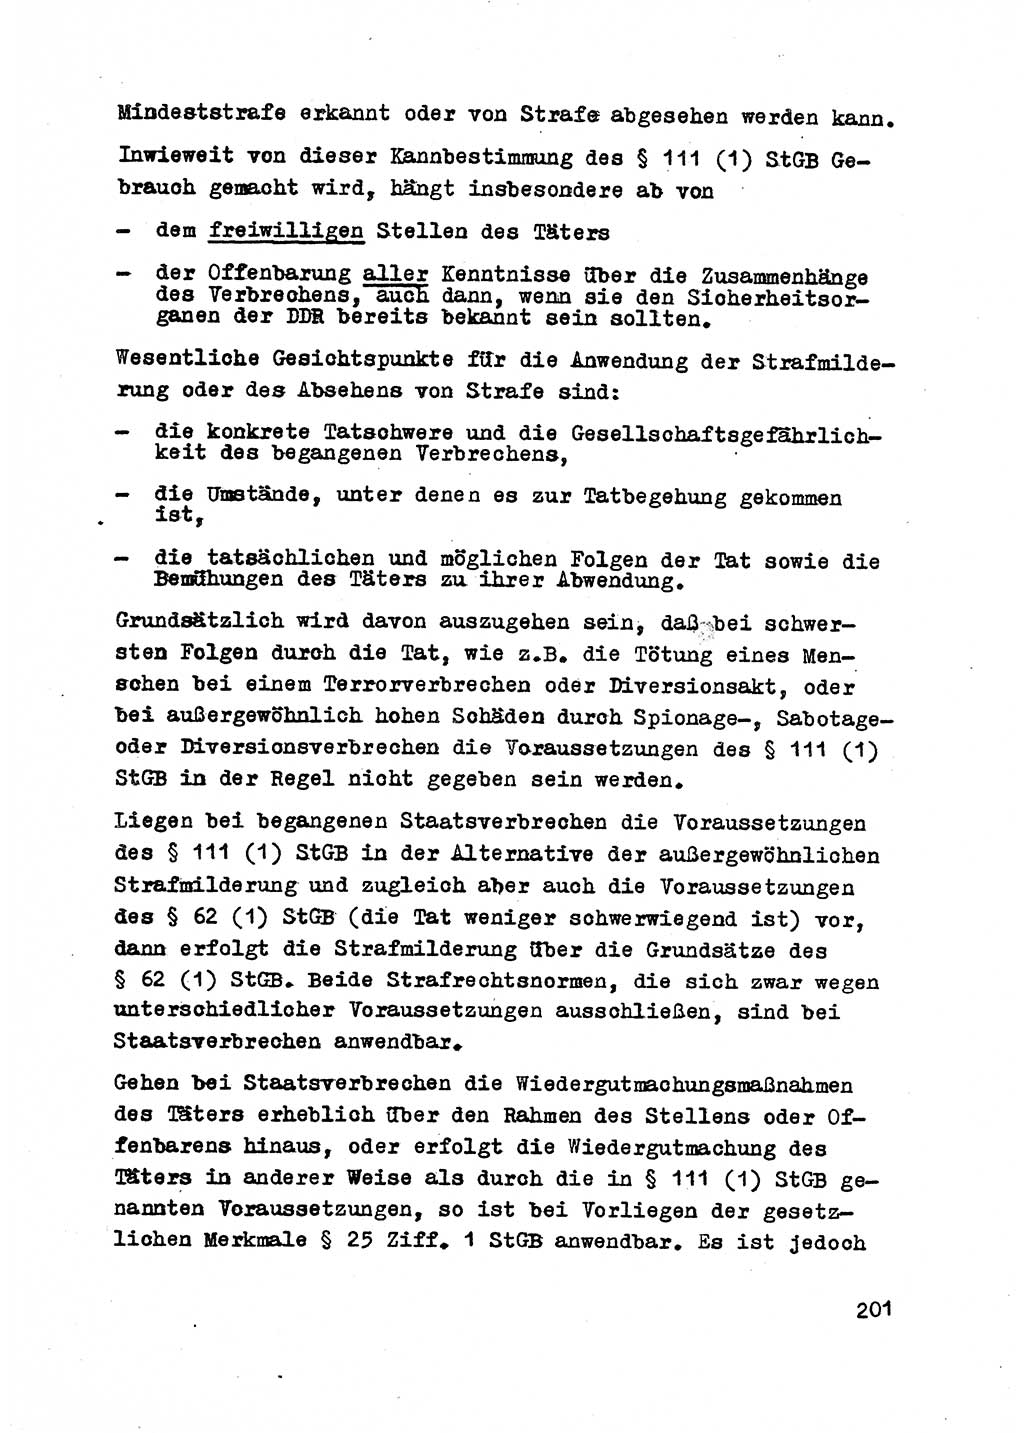 Strafrecht der DDR (Deutsche Demokratische Republik), Besonderer Teil, Lehrmaterial, Heft 2 1969, Seite 201 (Strafr. DDR BT Lehrmat. H. 2 1969, S. 201)